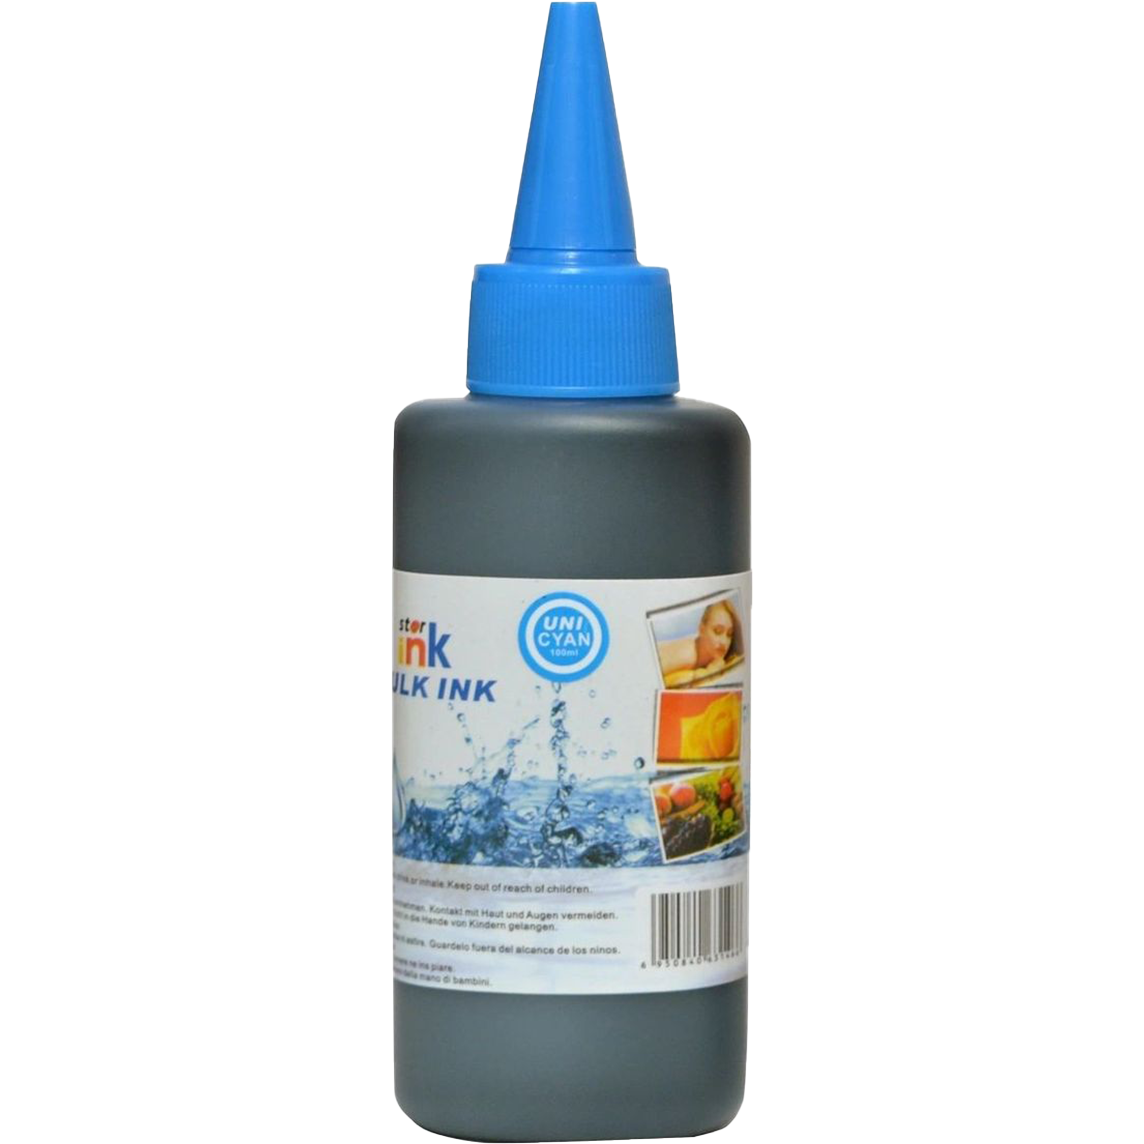 Starink Starink kompatibilní láhev s inkoustem HP 100 ml - univerzální (Azurová)